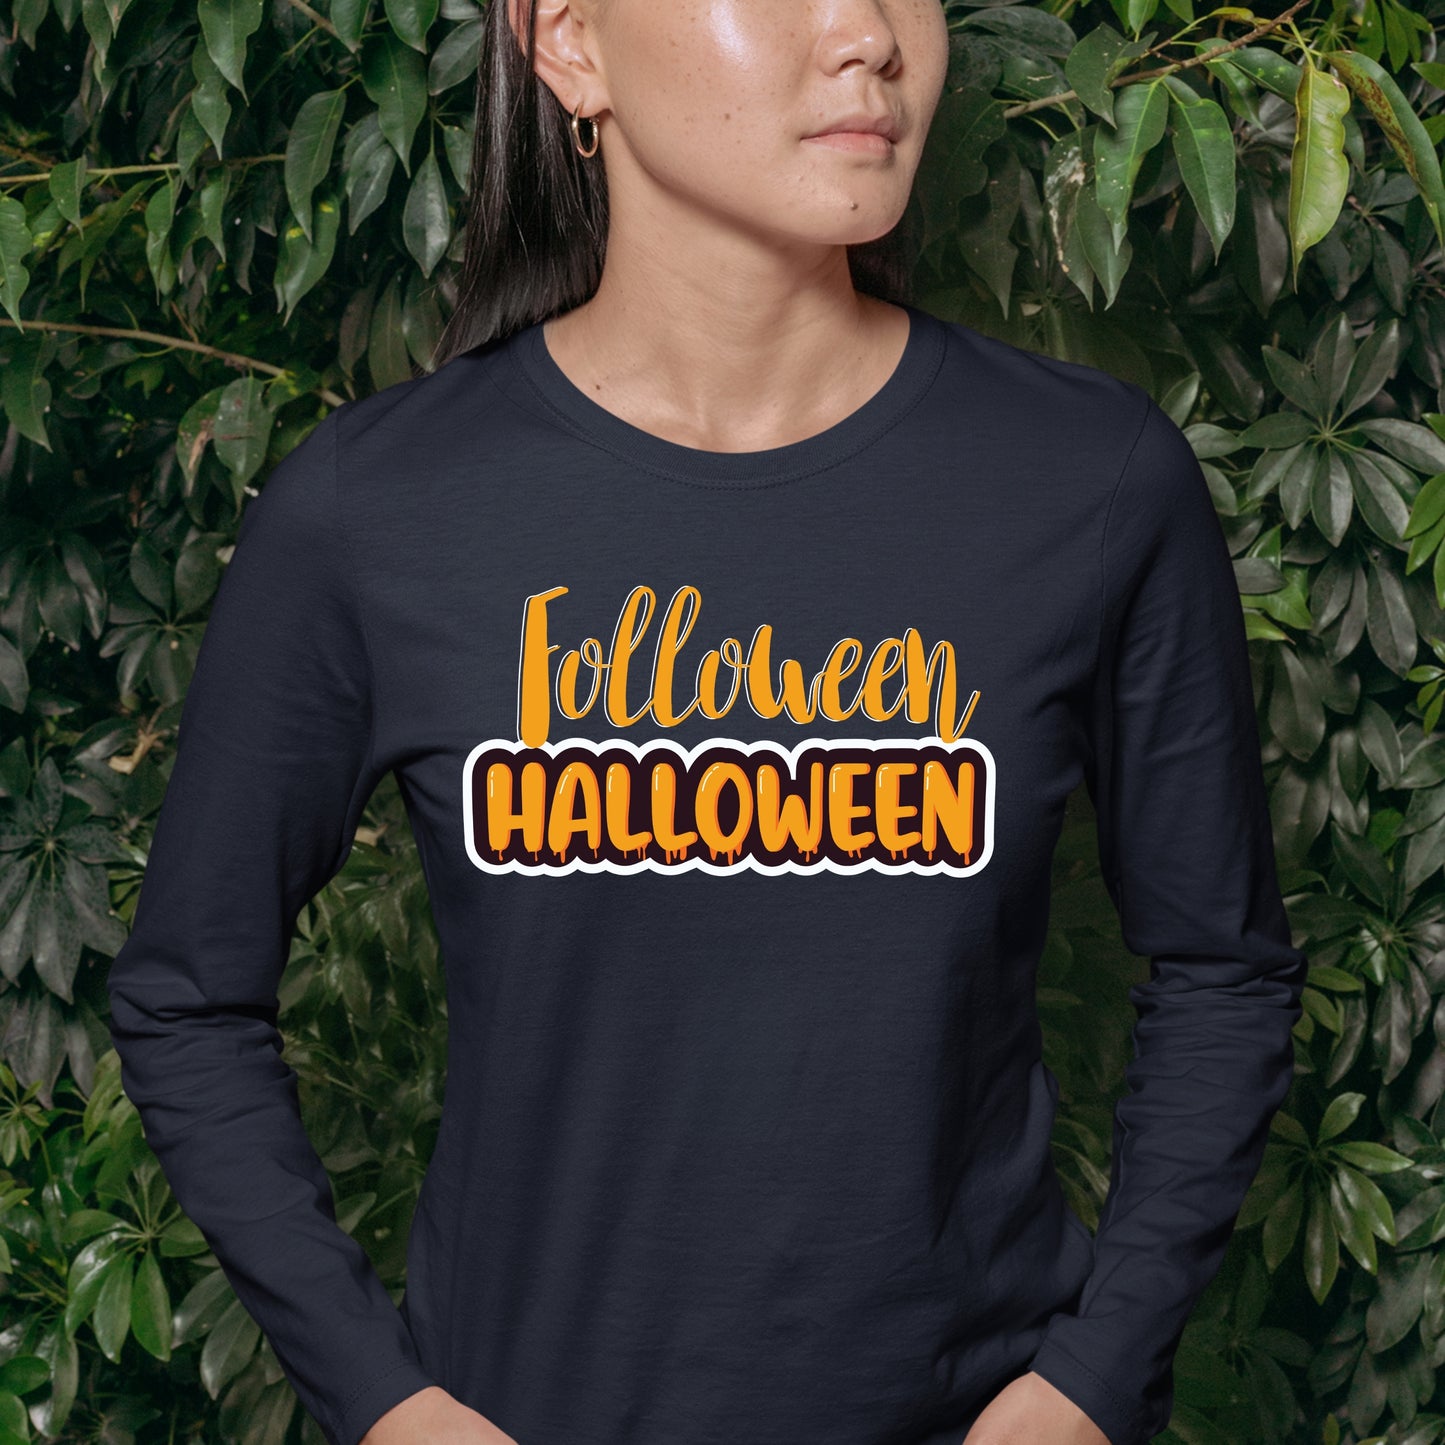 Halloween Folloween Halloween Sweatshirt, Halloween Gift Sweatshirt, Halloween Sweater, Cute Halloween Sweatshirt, Halloween Design Shirt